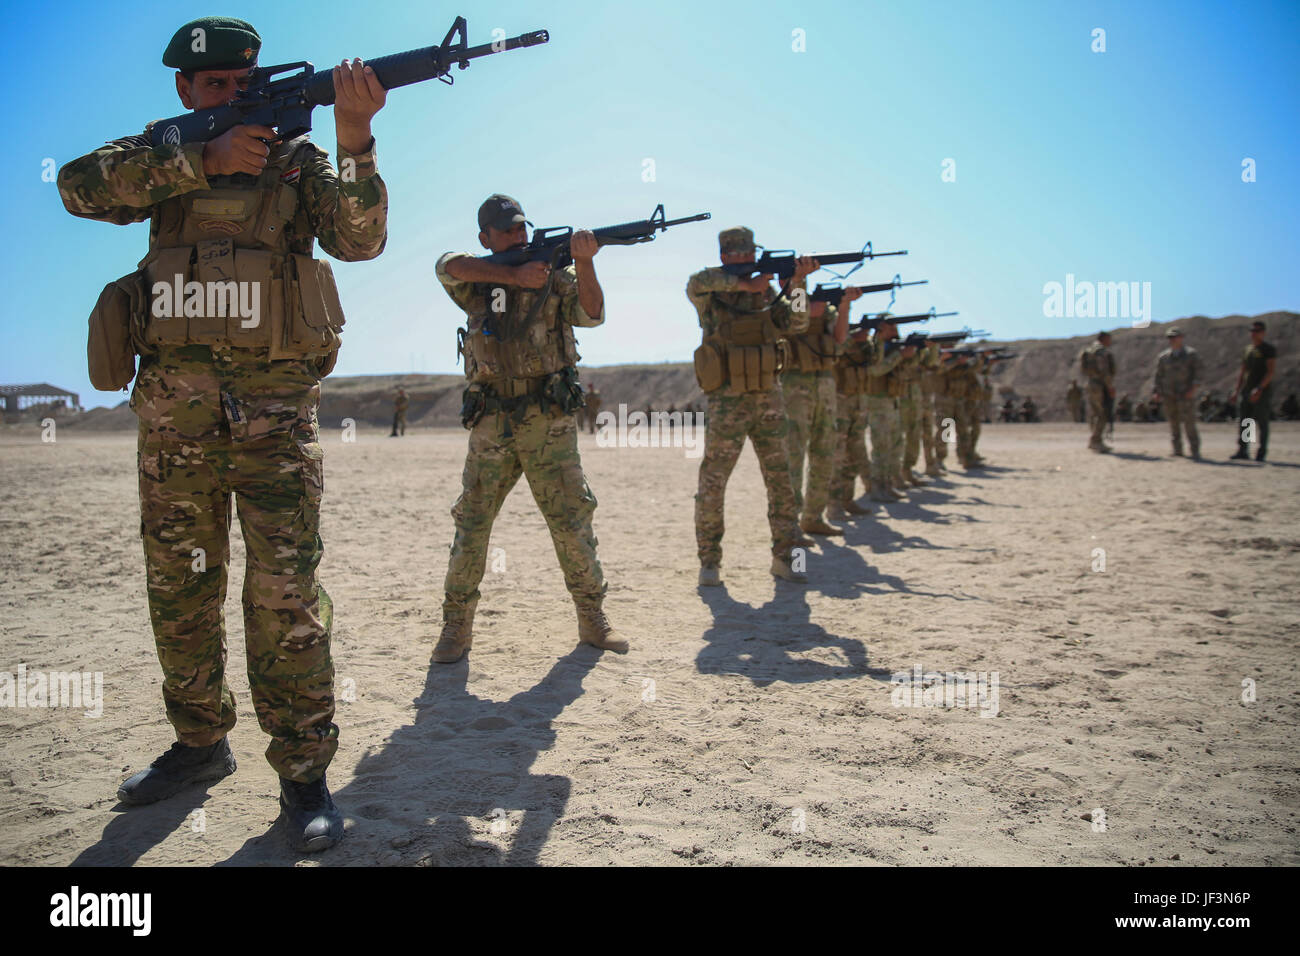 Los soldados iraquíes con el 2º Batallón, Brigada de comando del Comando de Operaciones, Anbar, practicar sus habilidades de puntería durante el entrenamiento con el Grupo de Tareas Al-Taqaddum, Combined Joint Task Force - Funcionamiento inherentes a resolver, en Iraq, 17 de abril de 2017. Esta capacitación es parte del conjunto de la CJTF-OIR construyendo la capacidad del partner misión mediante la capacitación y el mejoramiento de la capacidad de combate de las fuerzas se asoció ISIS. CJTF-OIR es la coalición global para derrotar a ISIS en Iraq y Siria. (Ee.Uu. Marine Corps foto por CPL. Shellie Hall) Foto de stock